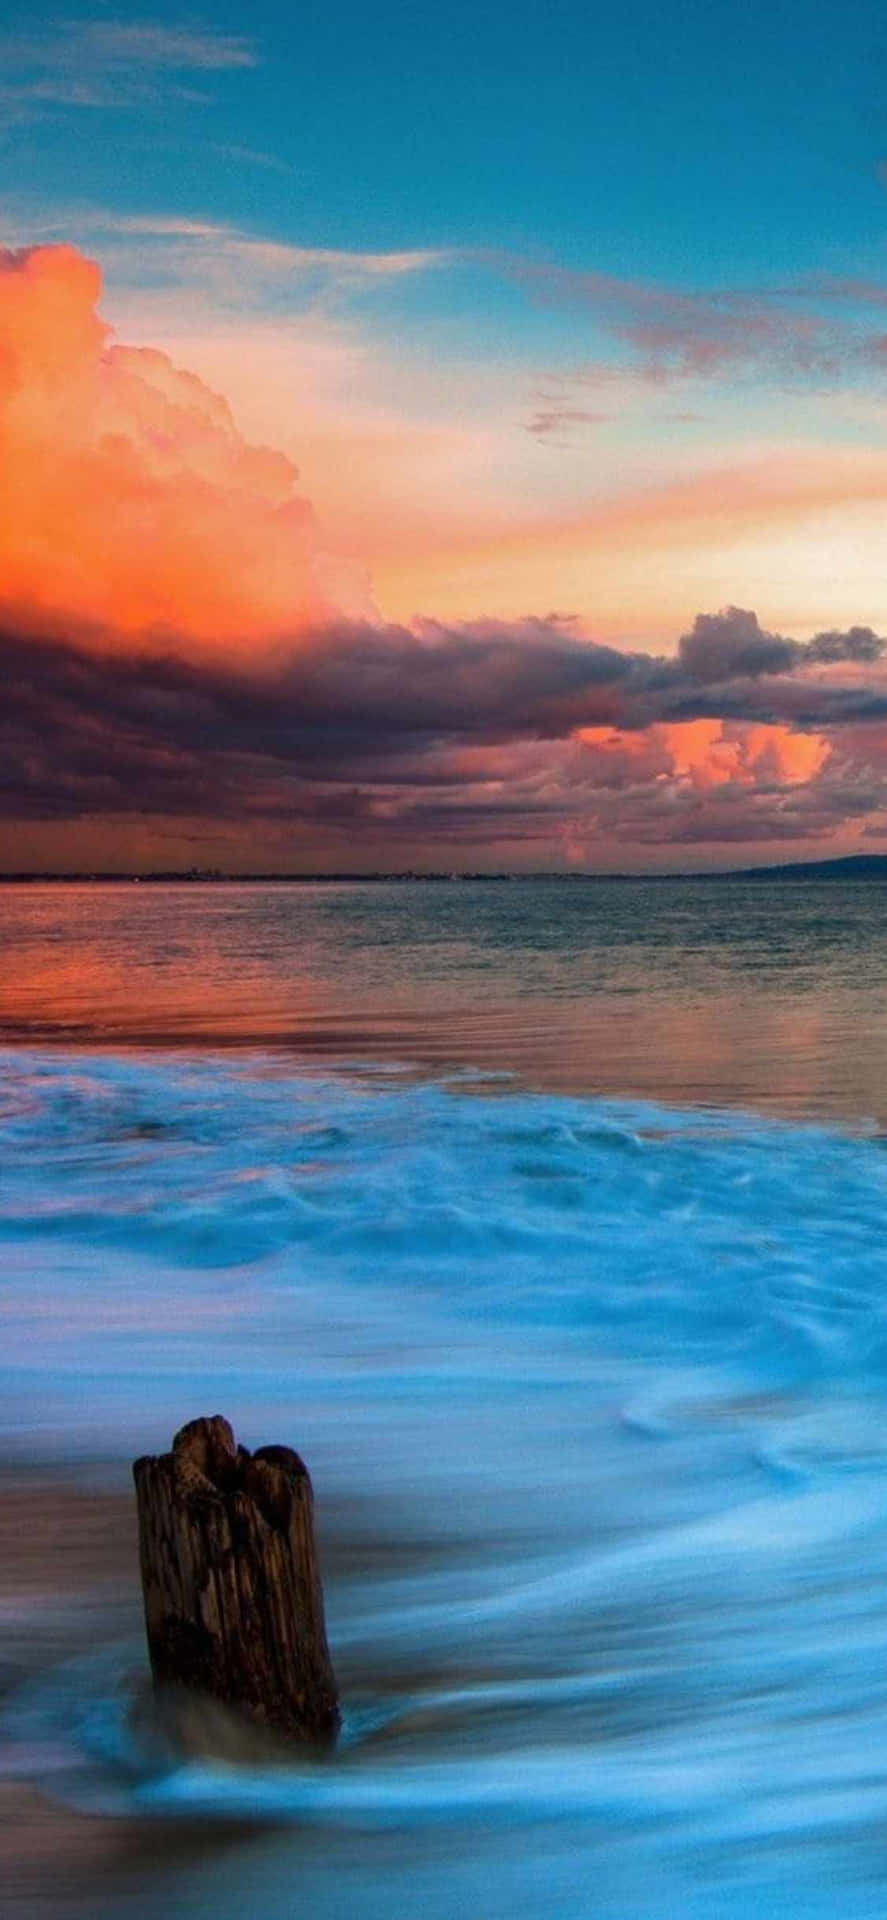 Ettidylliskt Solnedgång Över Malibu, Kalifornien Sedd Genom Linsen På En Iphone Xs.